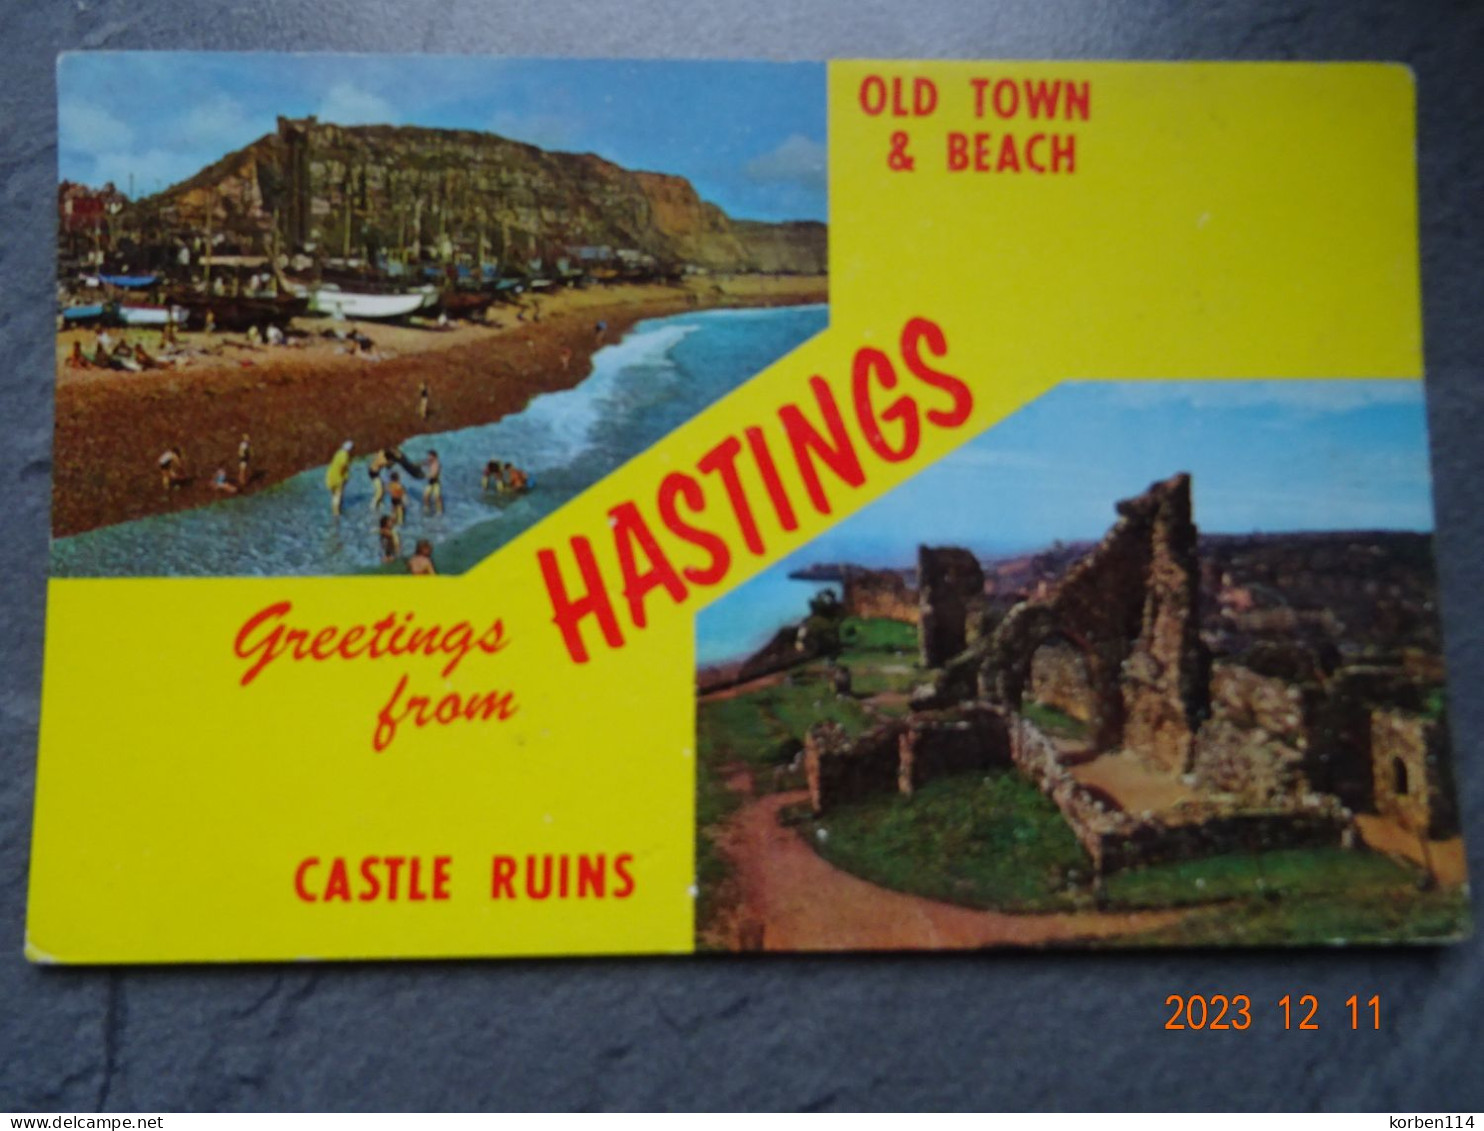 GREETINGS FROM HASTINGS - Hastings